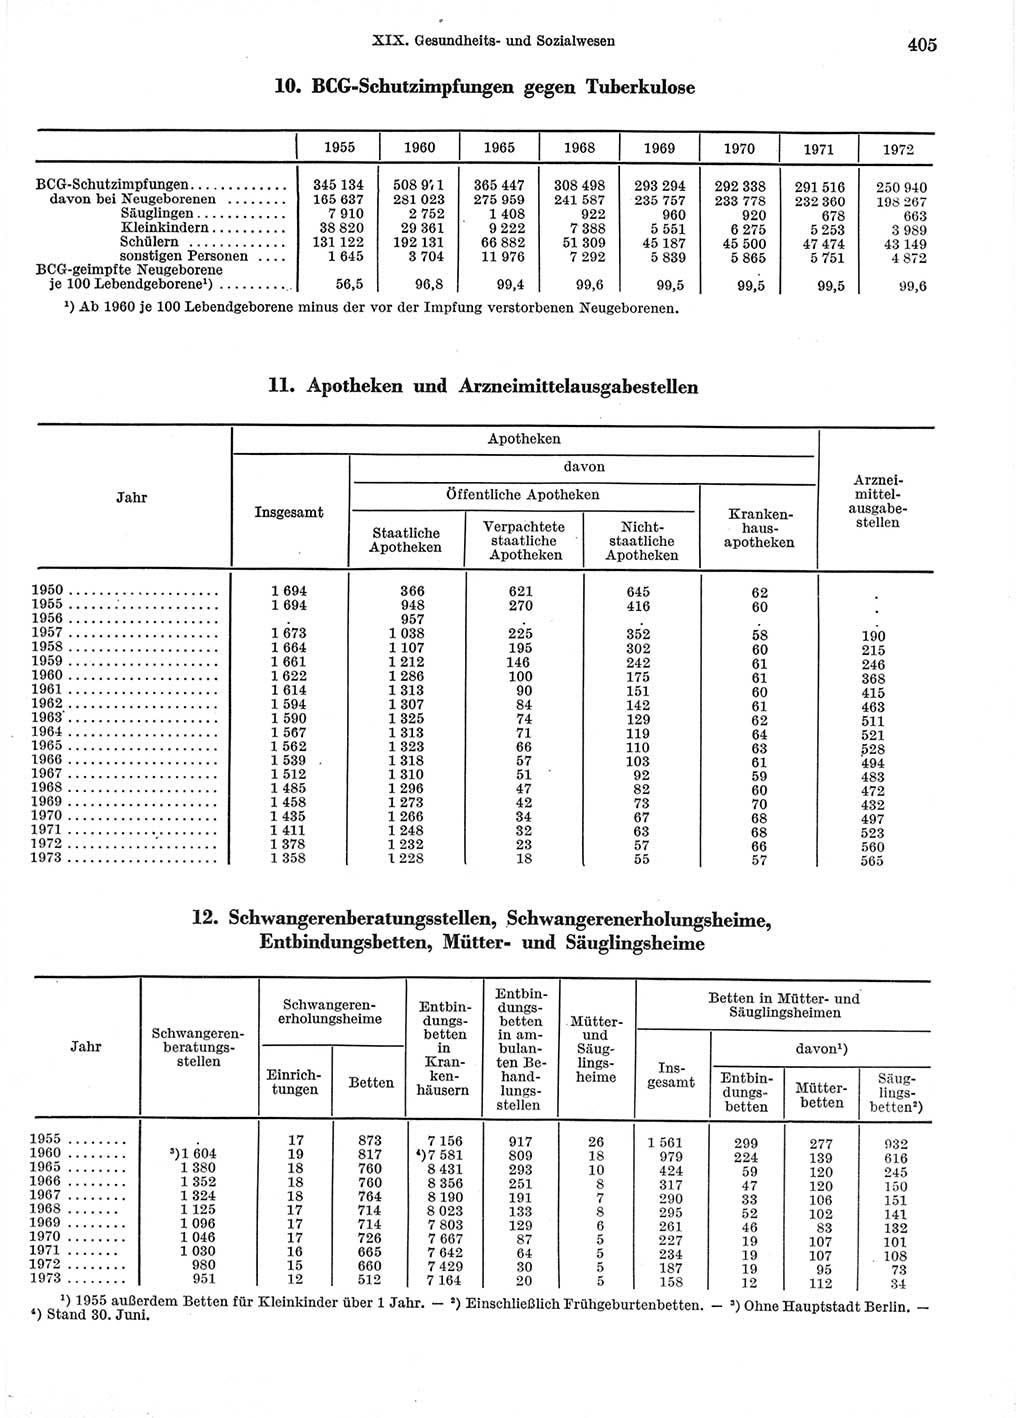 Statistisches Jahrbuch der Deutschen Demokratischen Republik (DDR) 1974, Seite 405 (Stat. Jb. DDR 1974, S. 405)